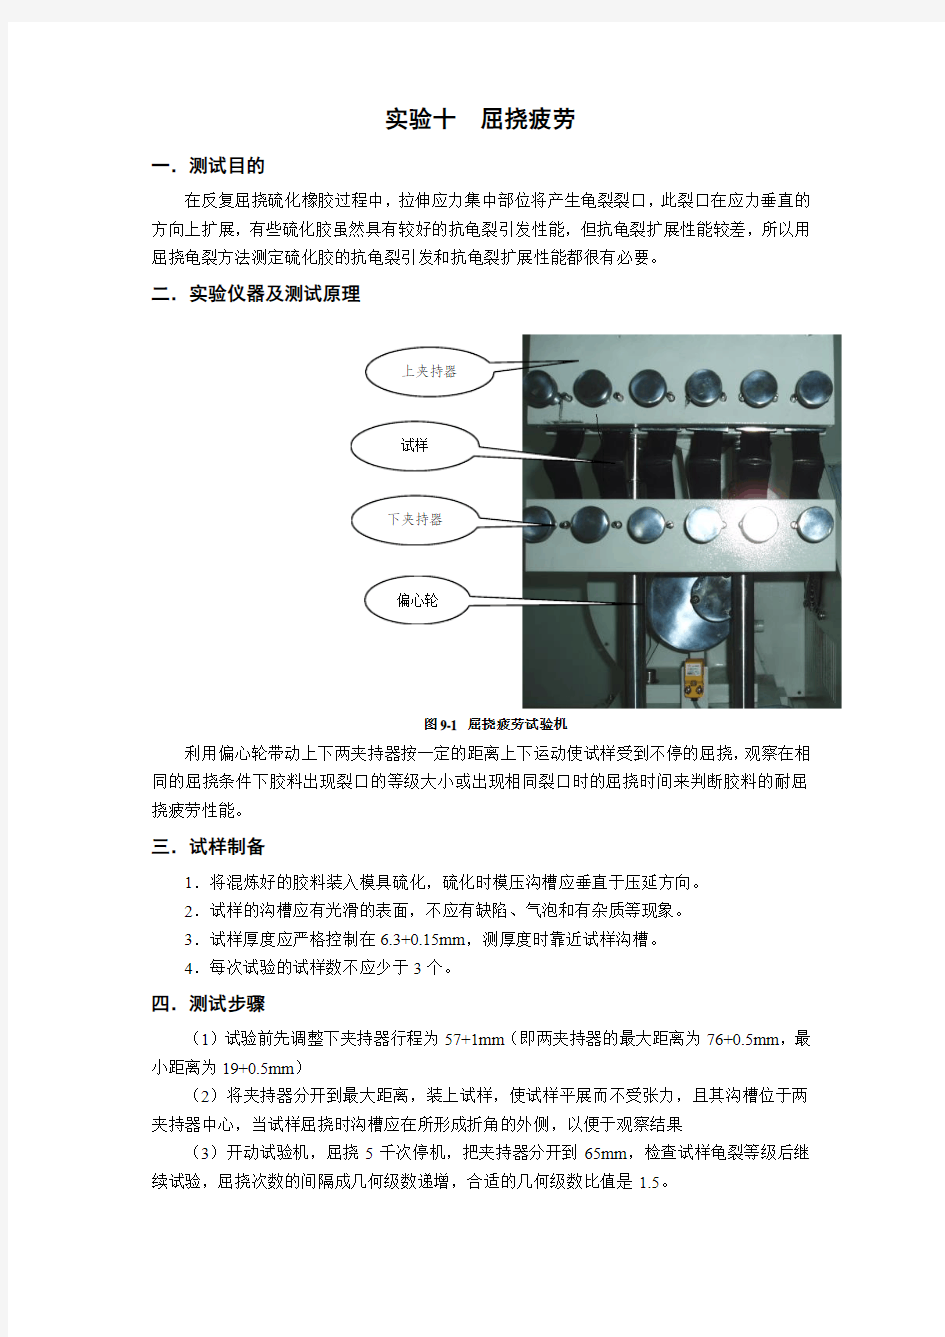 青岛科技大学-橡胶实验十--屈挠疲劳